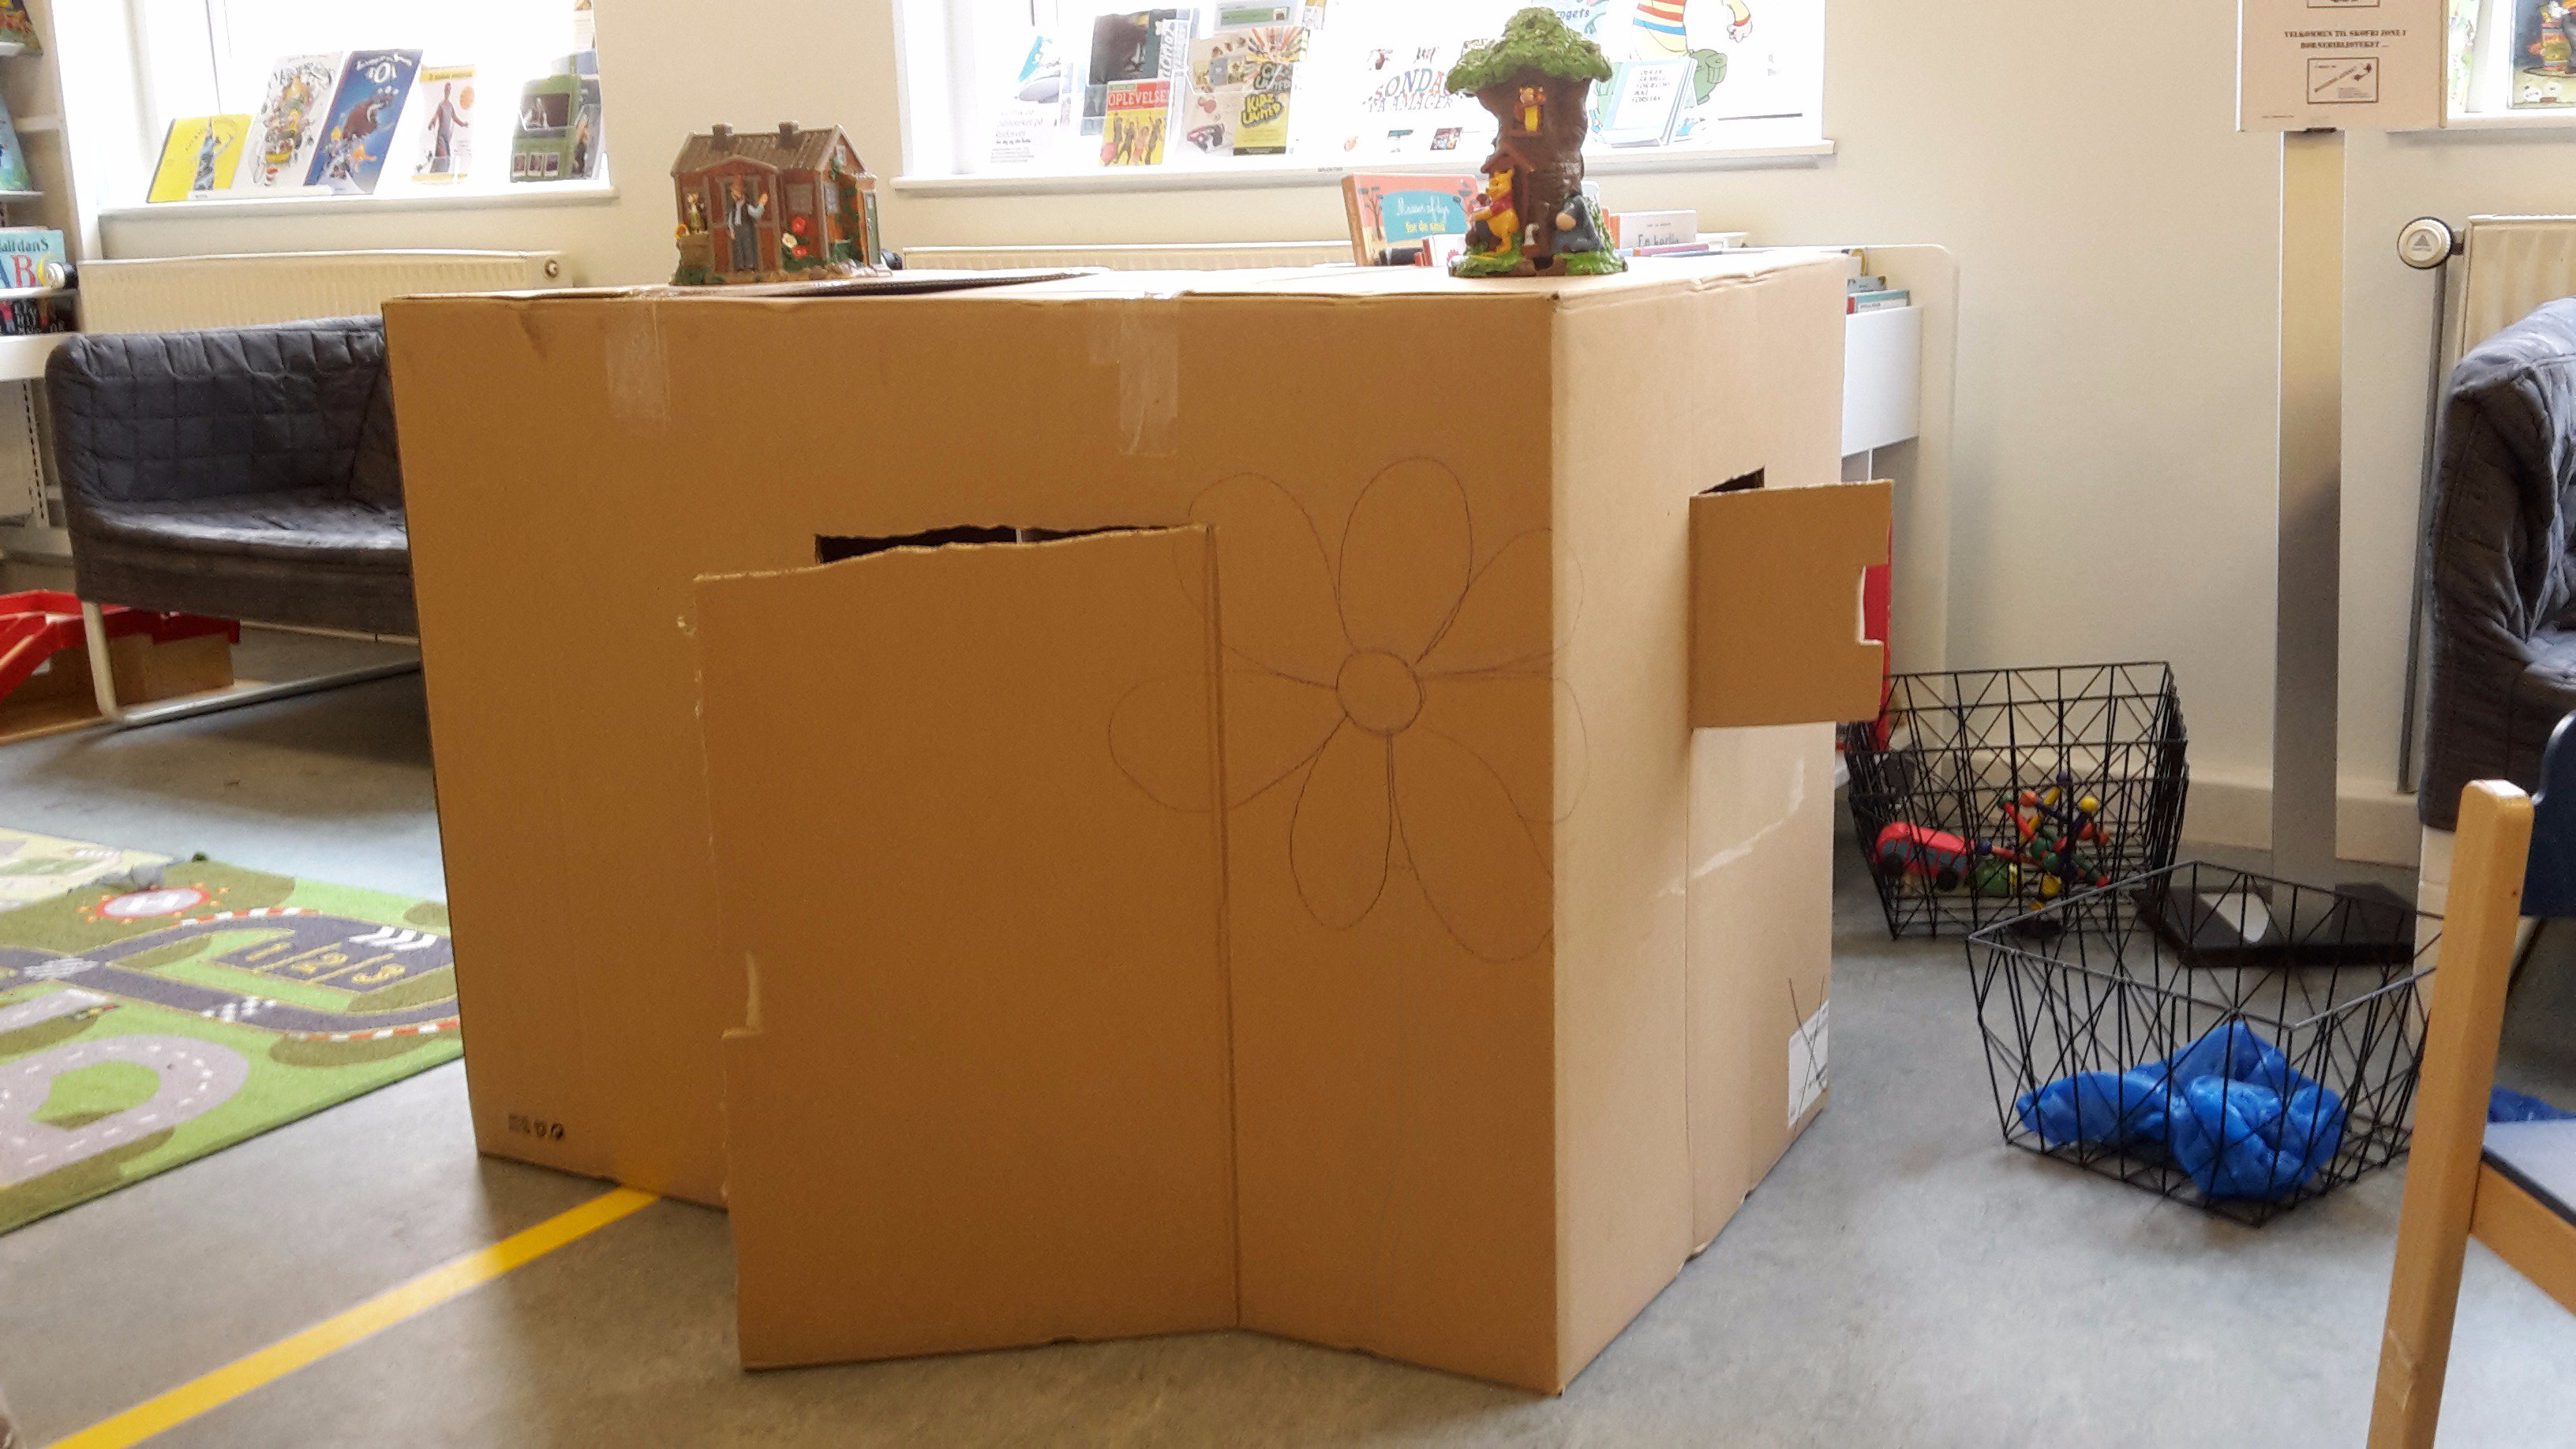 pubertet Duchess depositum Bibliotekshuset on Twitter: "Hvorfor smide en stor papkasse ud, når børnene  kan flytte ind. Der er lagt farveblyanter frem, så børnene kan dekorere  deres nye hus 😊 https://t.co/3YDcFAmp6R" / Twitter